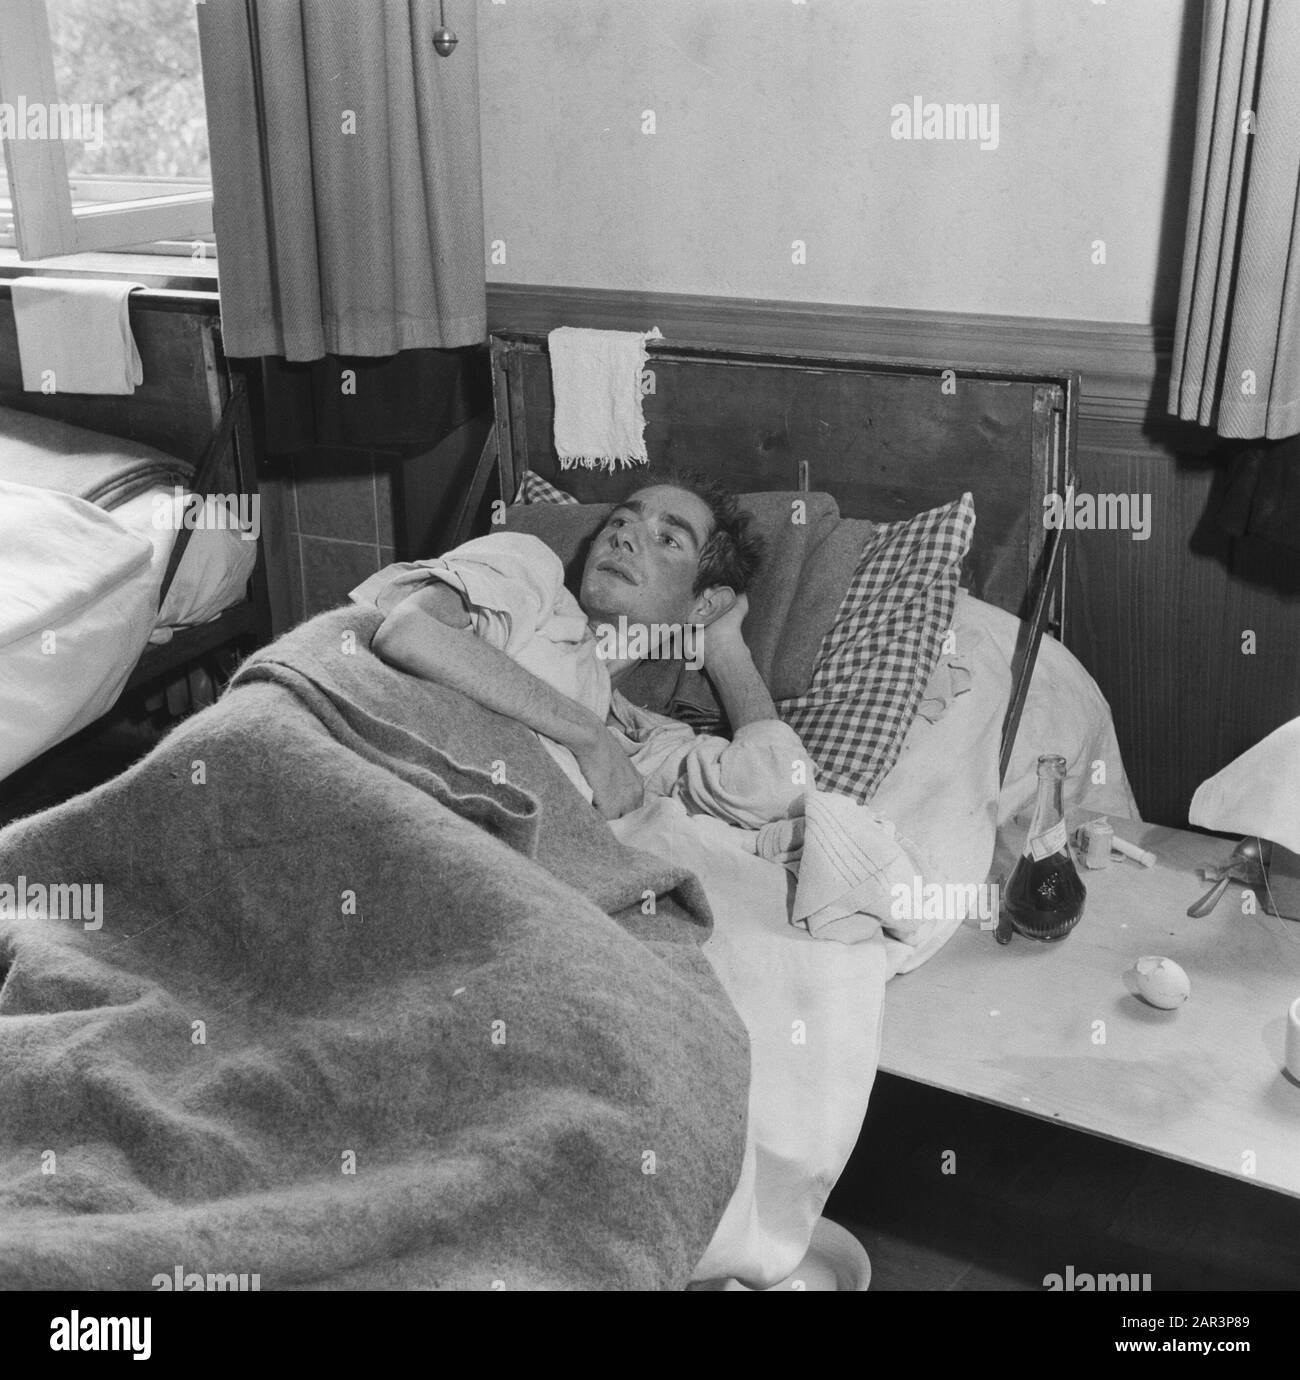 Campo di rimpatrio Bergen-Belsen [l'uomo si trova a letto] Data: 1945 luogo: Bergen-Belsen, Germania Parole Chiave: Campi di concentramento, uomini, rimpatrio, seconda guerra mondiale Foto Stock